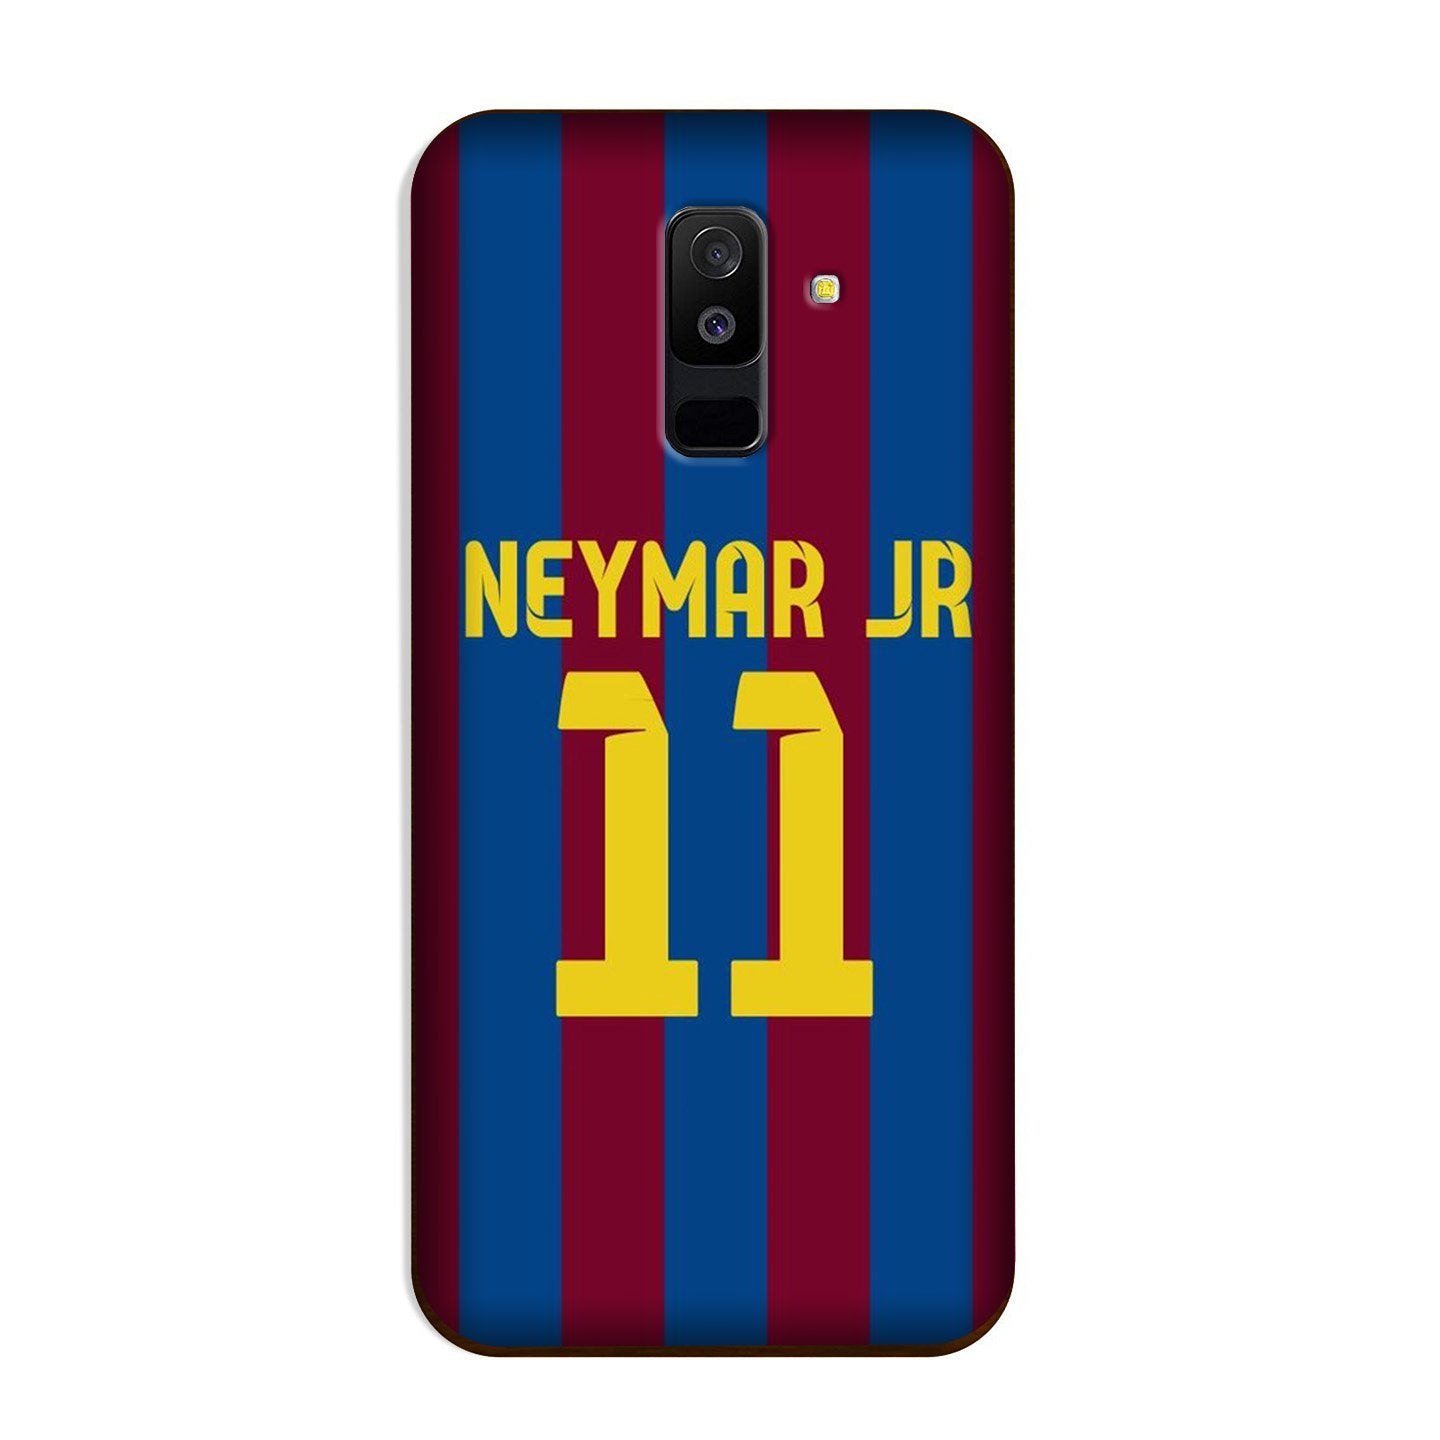 Neymar Jr Case for Galaxy A6 Plus(Design - 162)